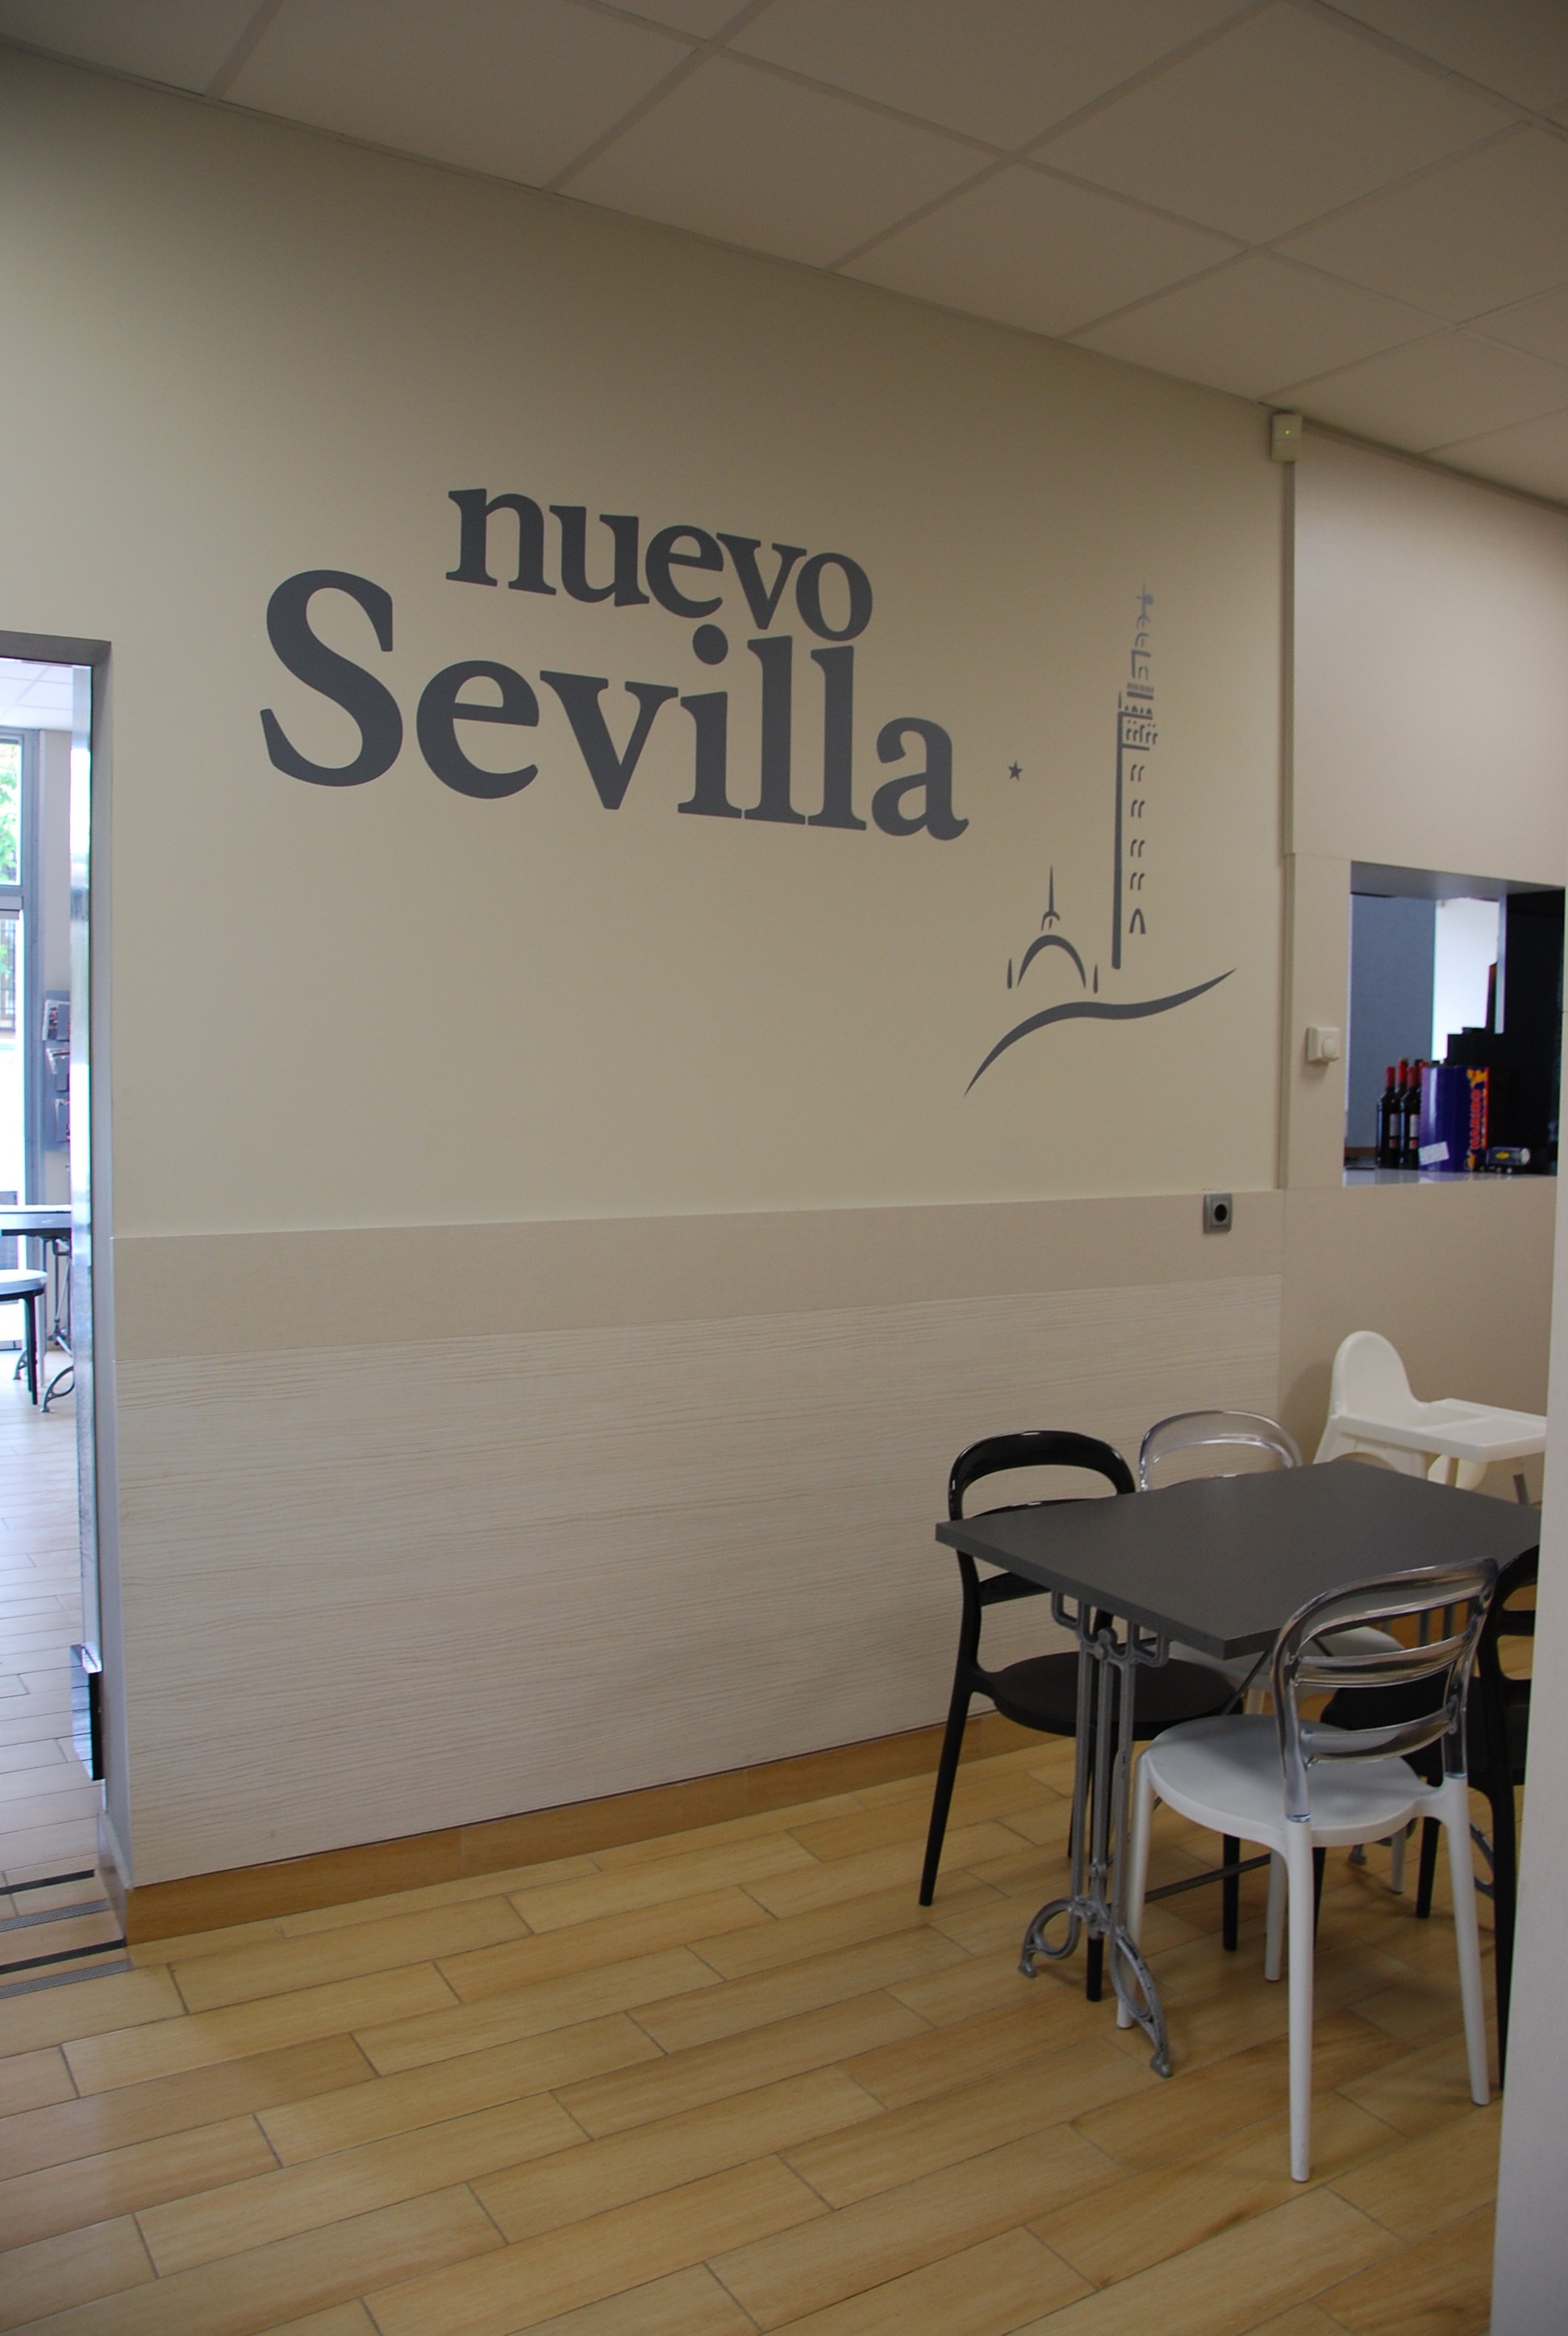 Nuevo Sevilla @ rotulación